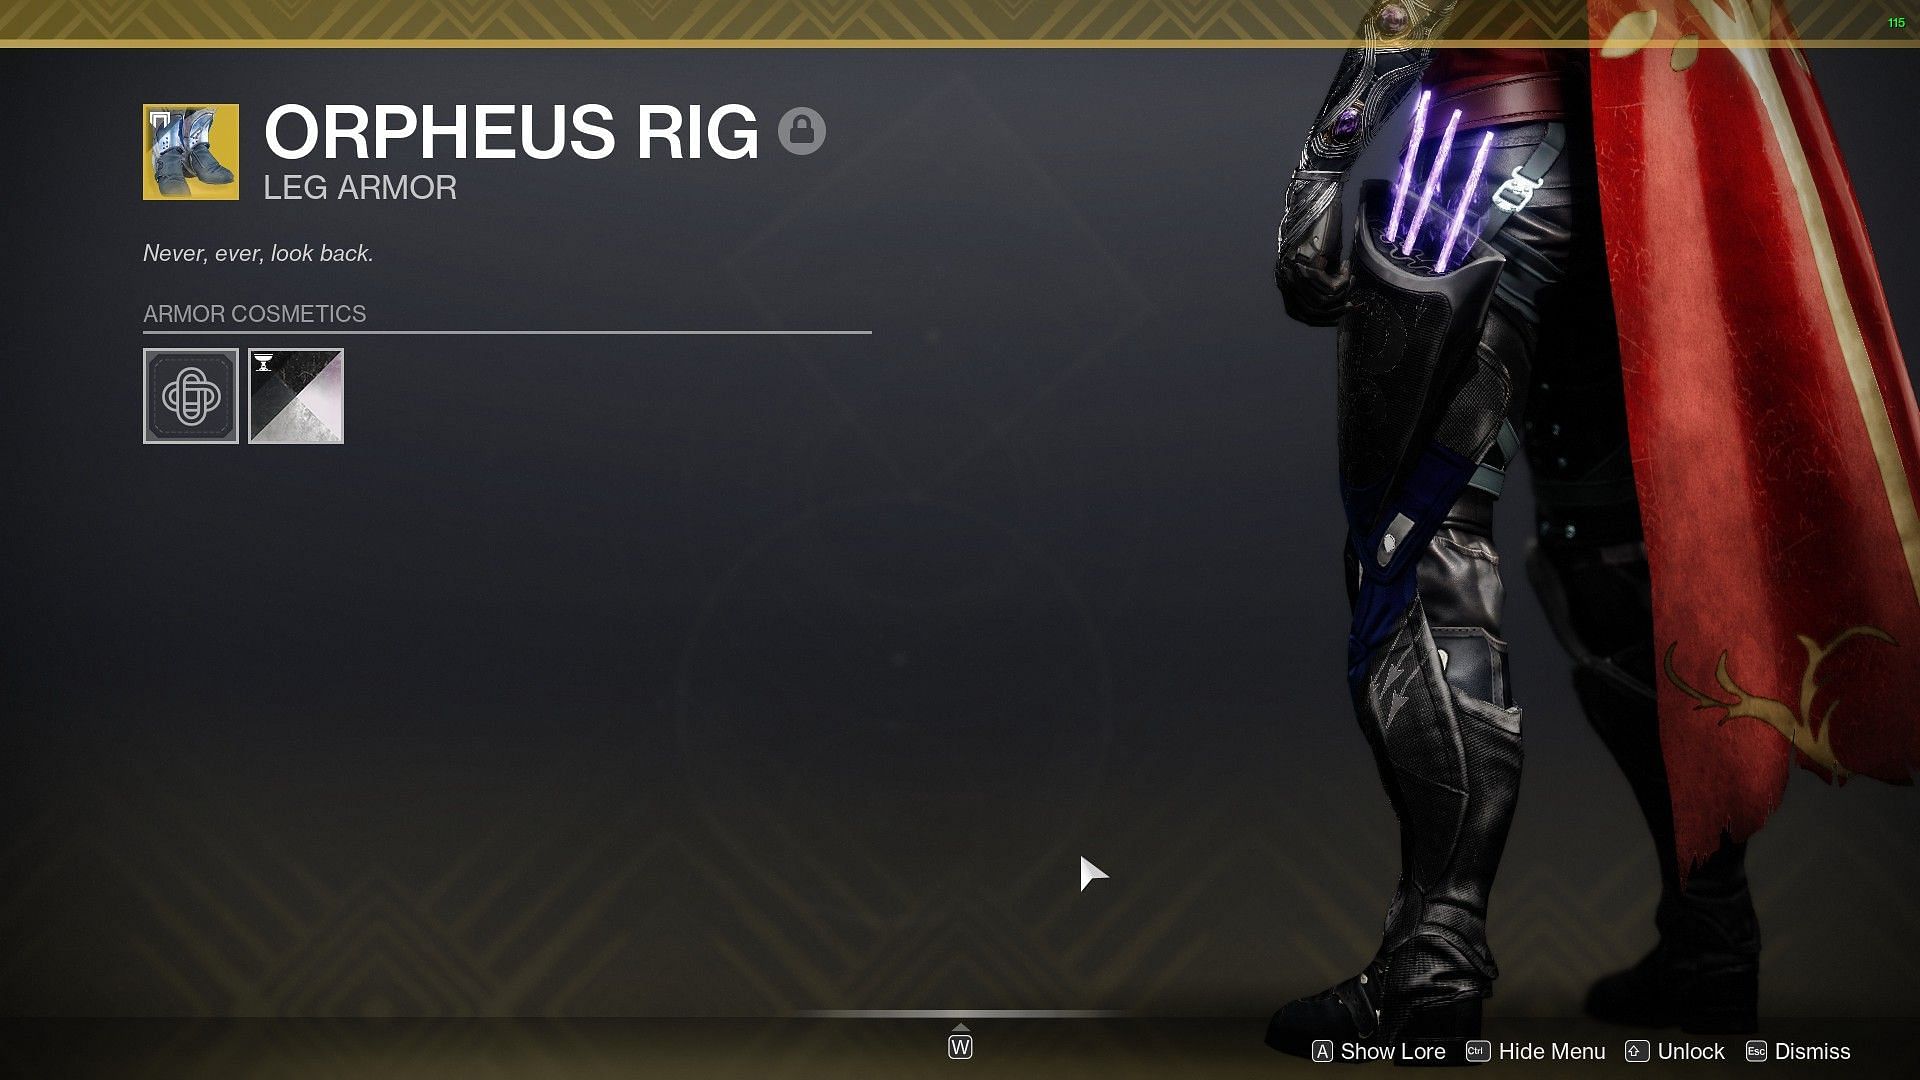 Orpheus Rig (Image via Destiny 2)